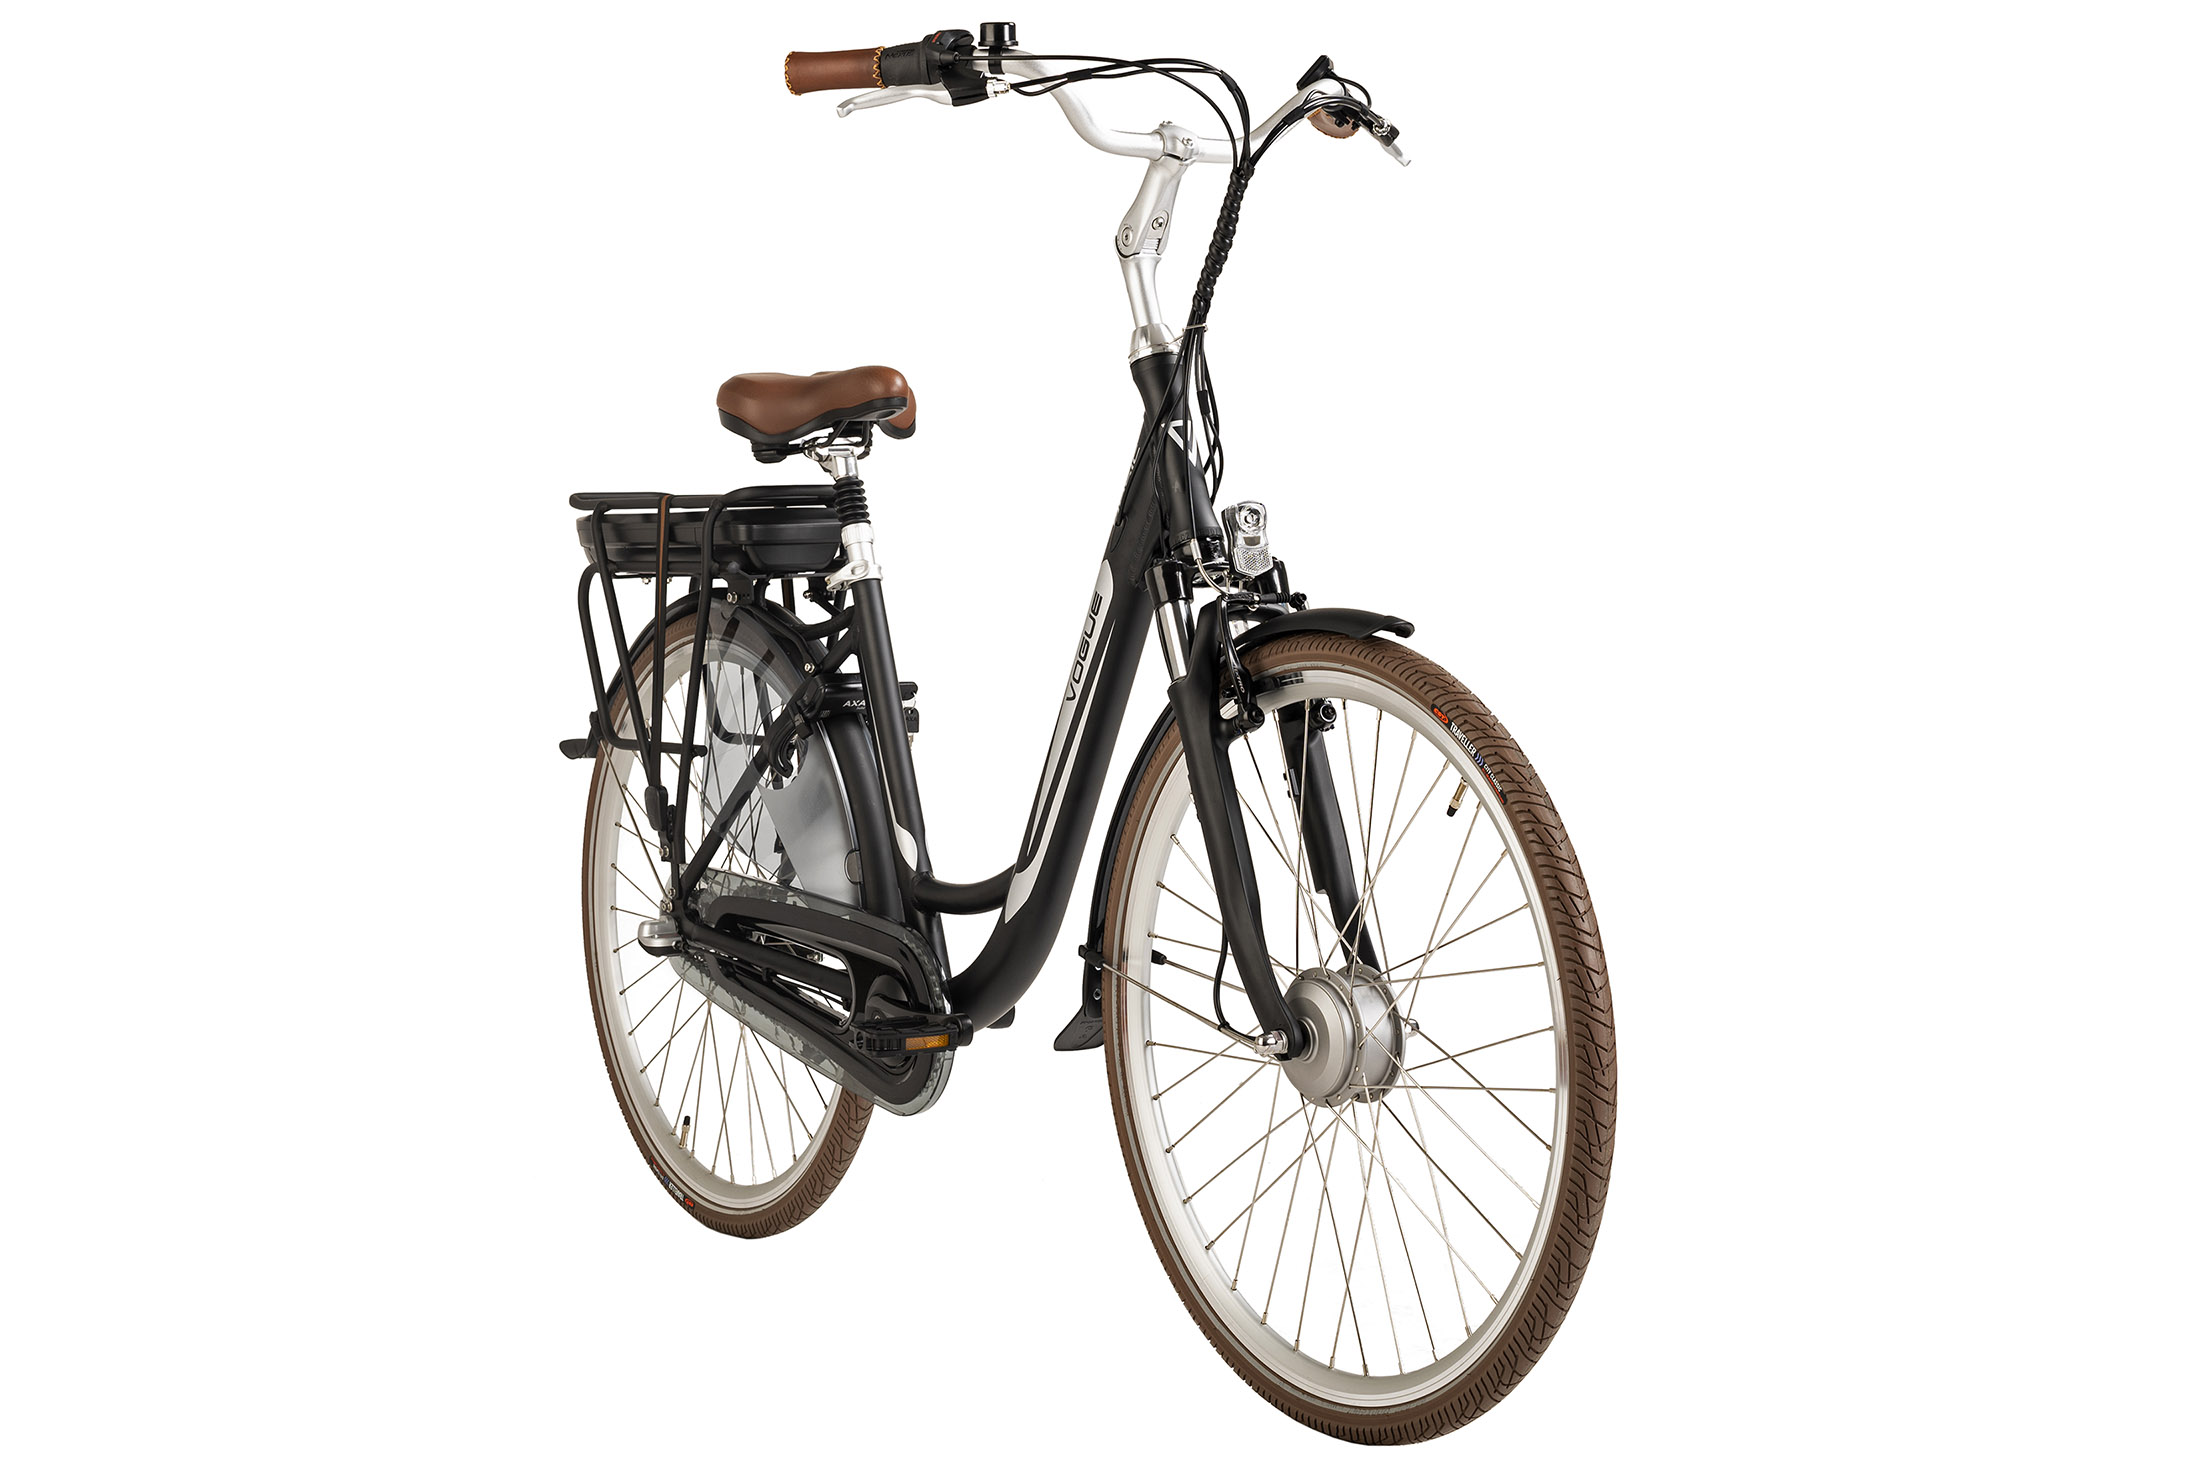 VOGUE Basic (Laufradgröße: Rahmenhöhe: Zoll, 48 Unisex-Rad, Schwarz) Citybike 468, 28 cm